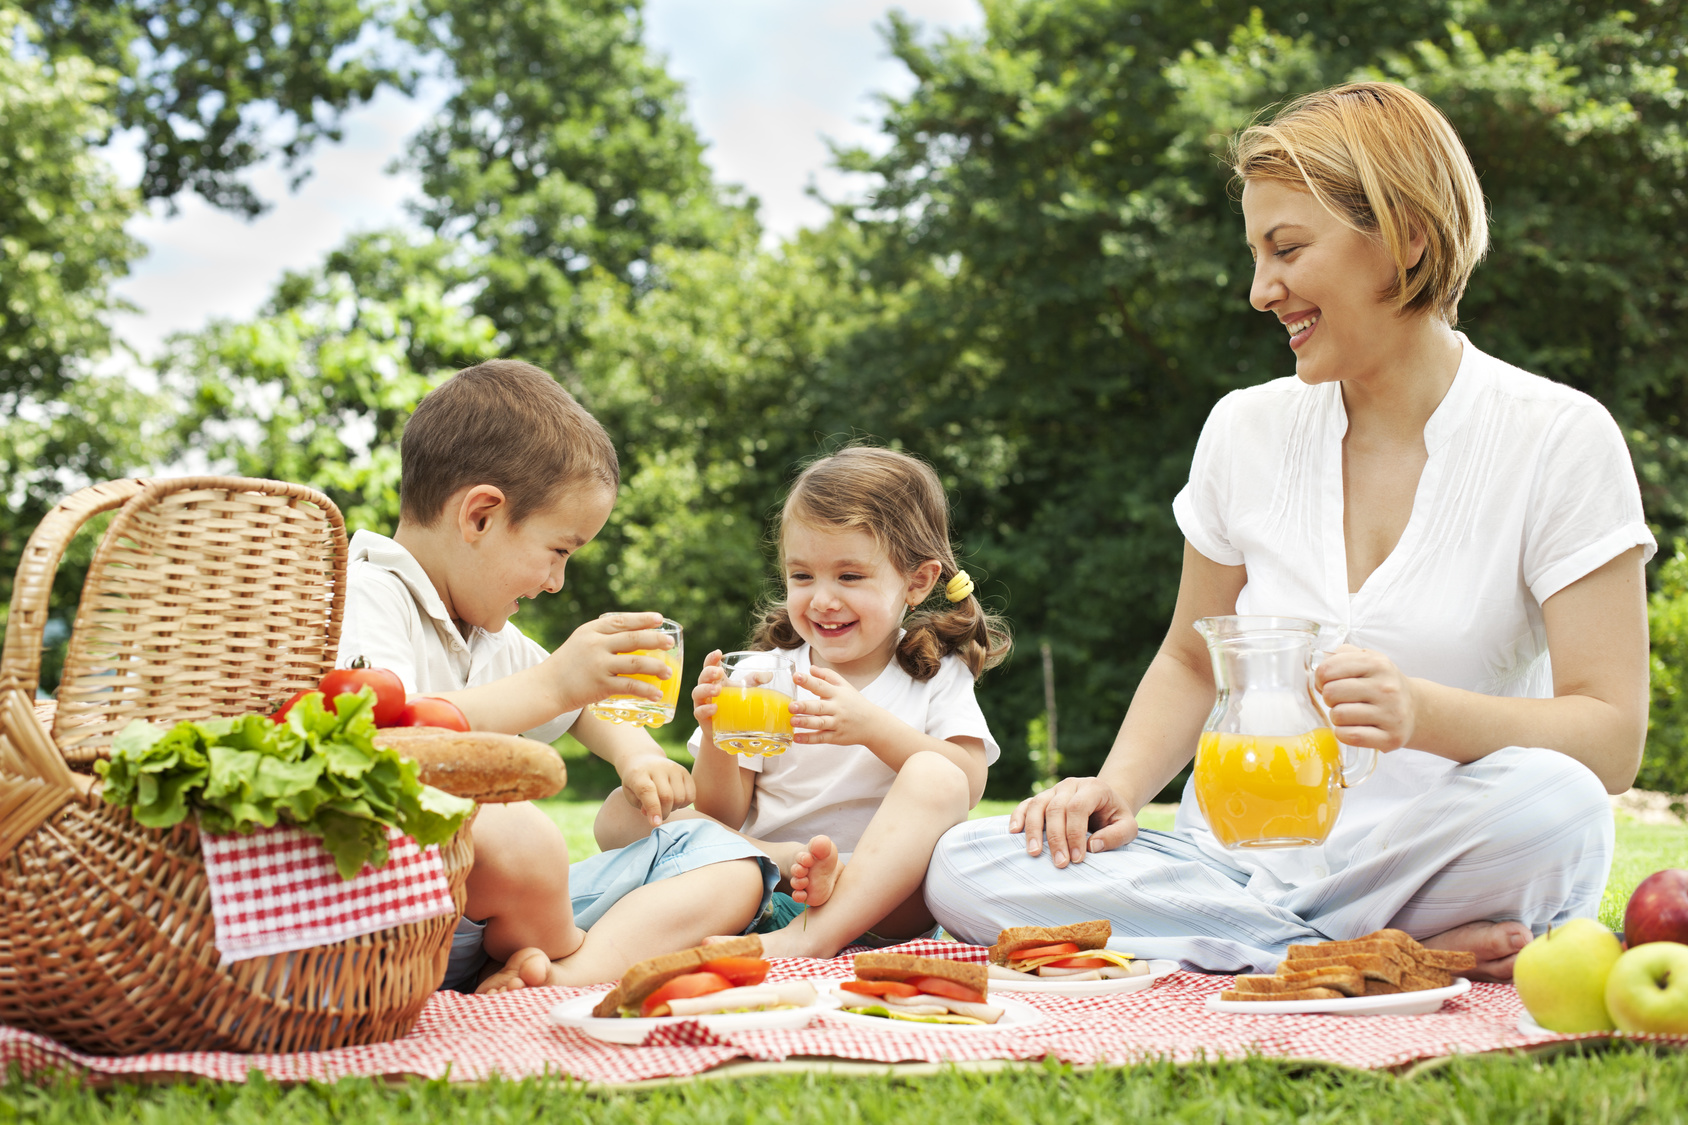 Пикник главное. Пикник на природе. Семья на пикнике. Пикник с семьей на природе. Семейная фотосессия на природе пикник.